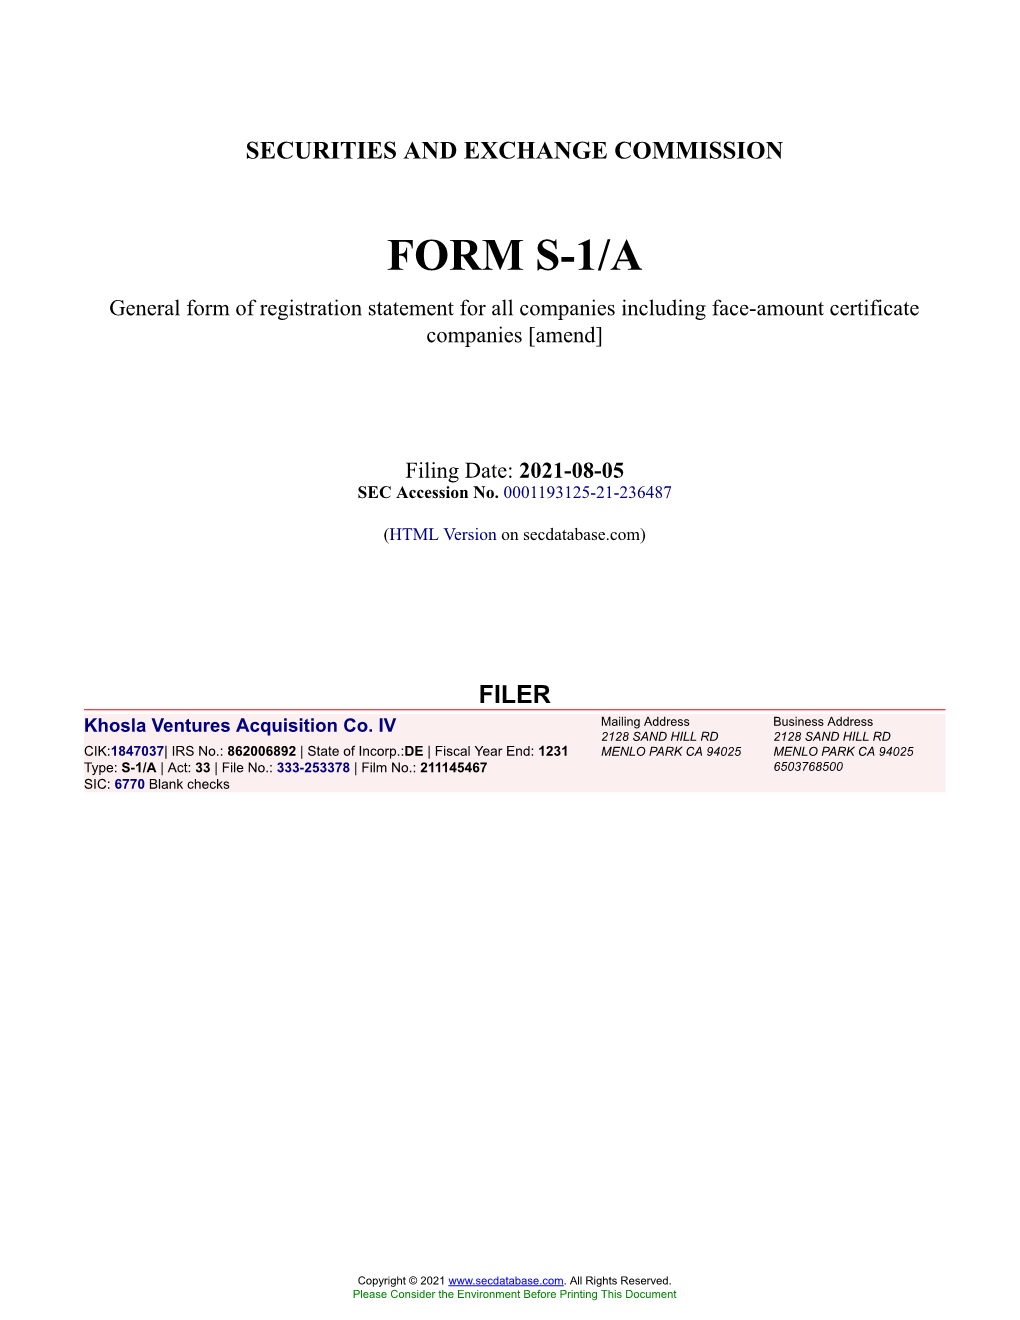 Khosla Ventures Acquisition Co. IV Form S-1/A Filed 2021-08-05